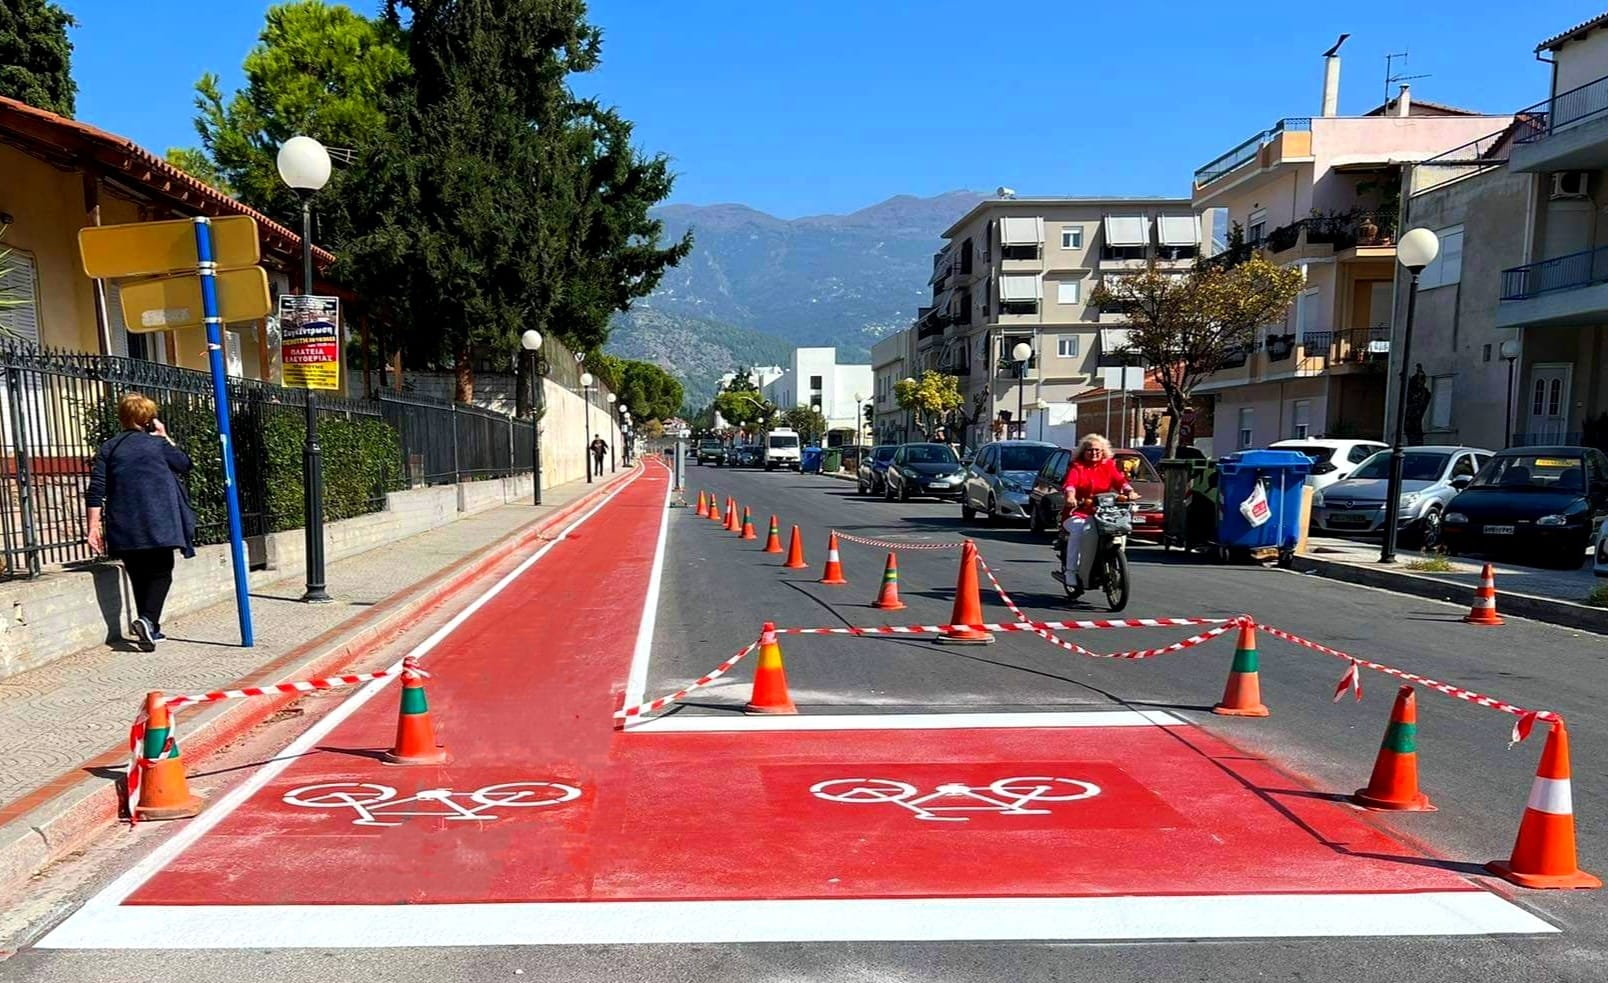 Βόλος: Ολοκληρωτικό “ρετούς” στο δίκτυο ποδηλατοδρόμων για να δοθεί σε χρήση